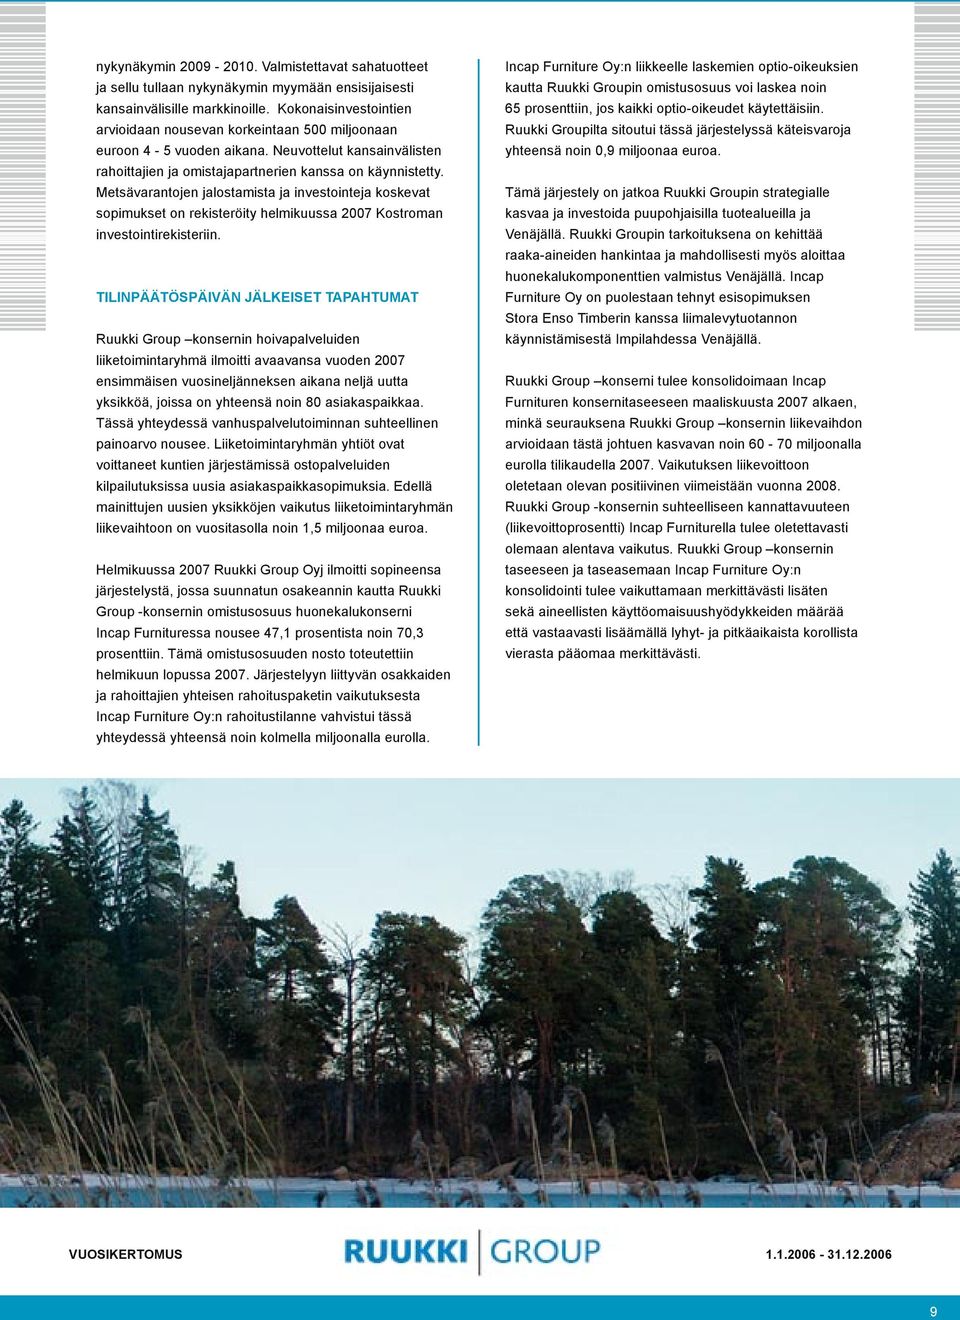 Metsävarantojen jalostamista ja investointeja koskevat sopimukset on rekisteröity helmikuussa 2007 Kostroman investointirekisteriin.